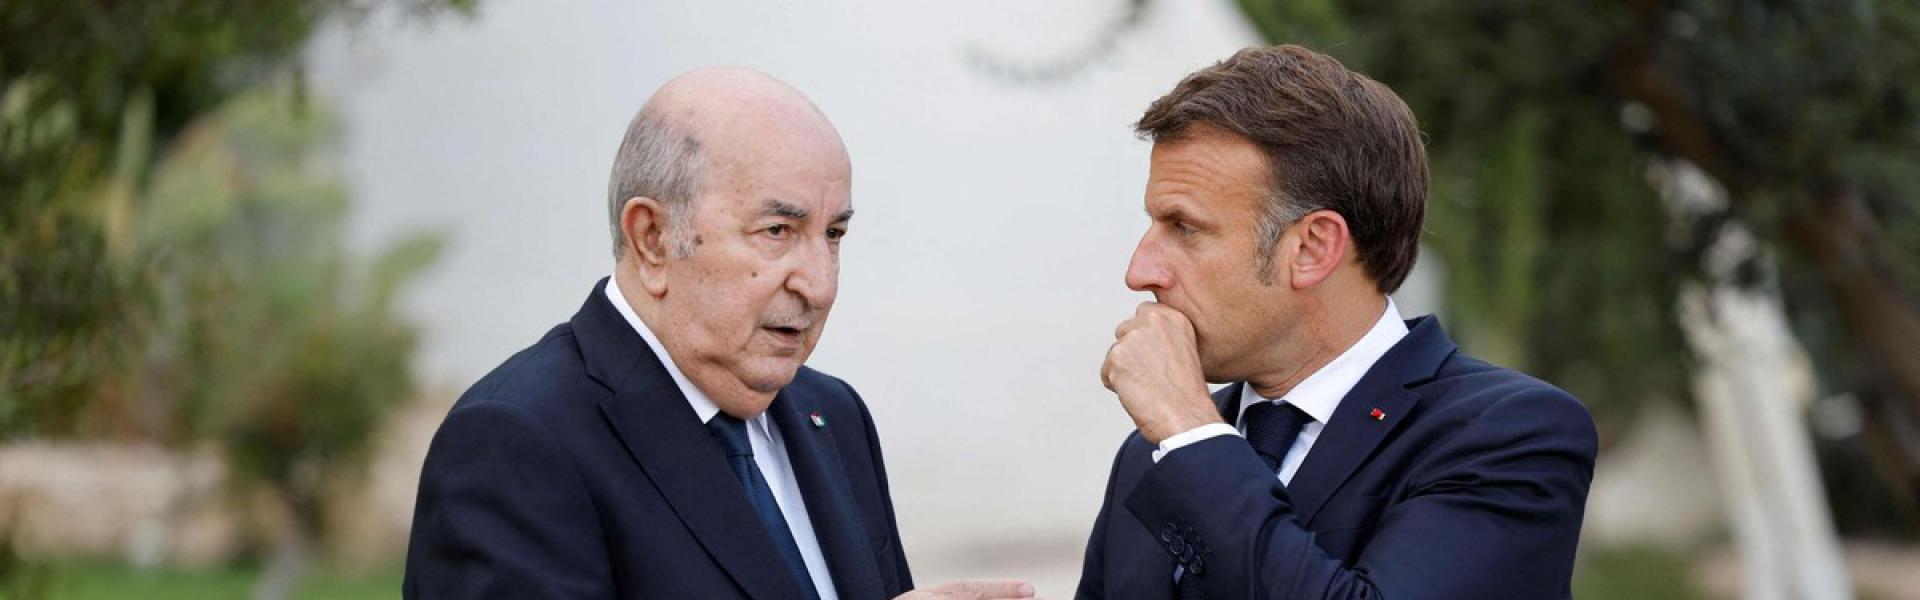 الغموض يلفّ مستقبل العلاقات المتذبذبة بين فرنسا والجزائر 